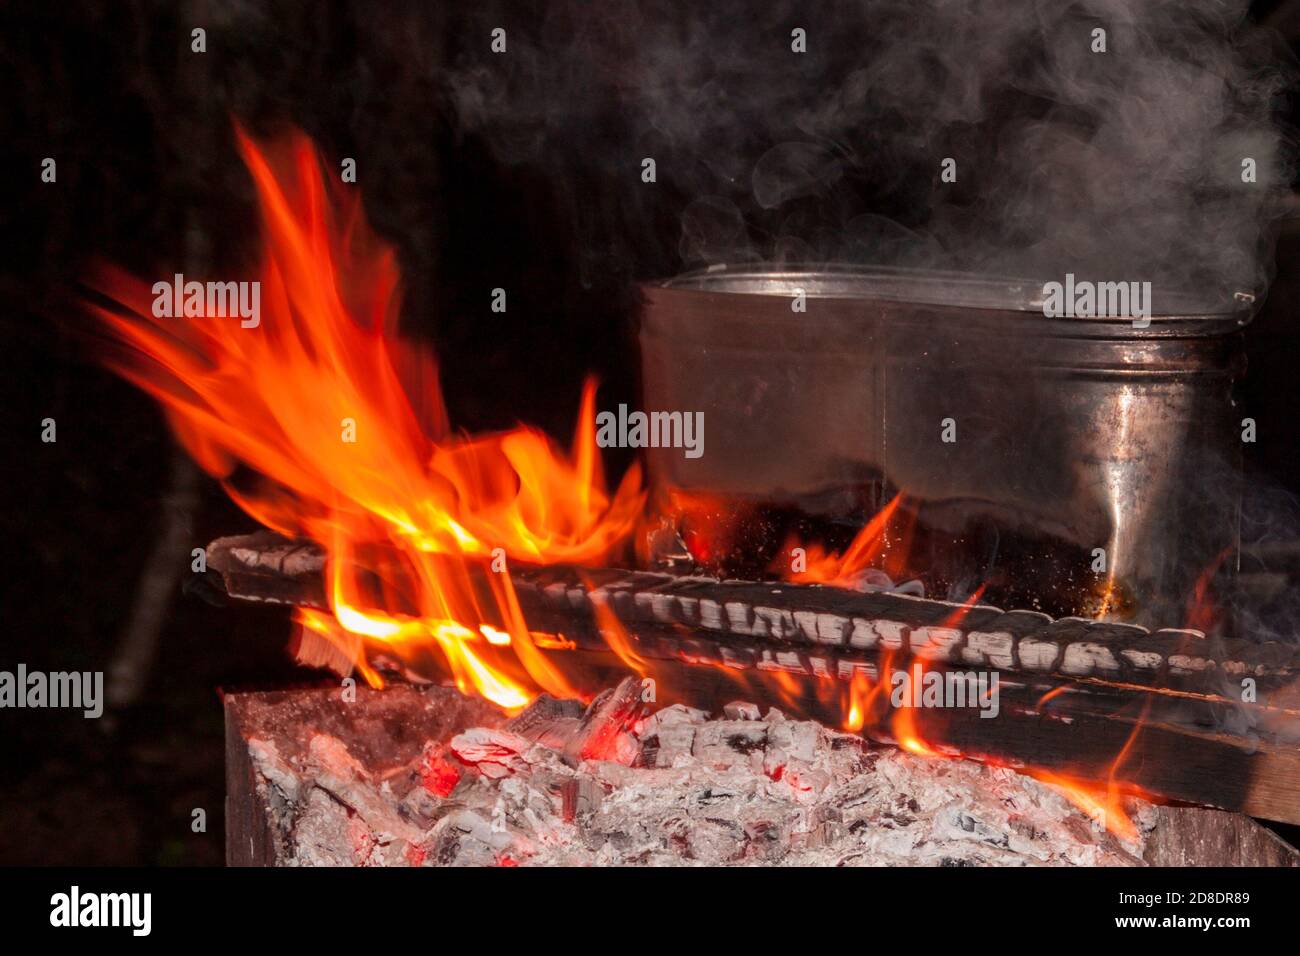 dîner au camping. bouilloire sur un feu de cheminée, feu, fumée. préparation d'un repas lors d'un voyage. repos sauvage. Banque D'Images